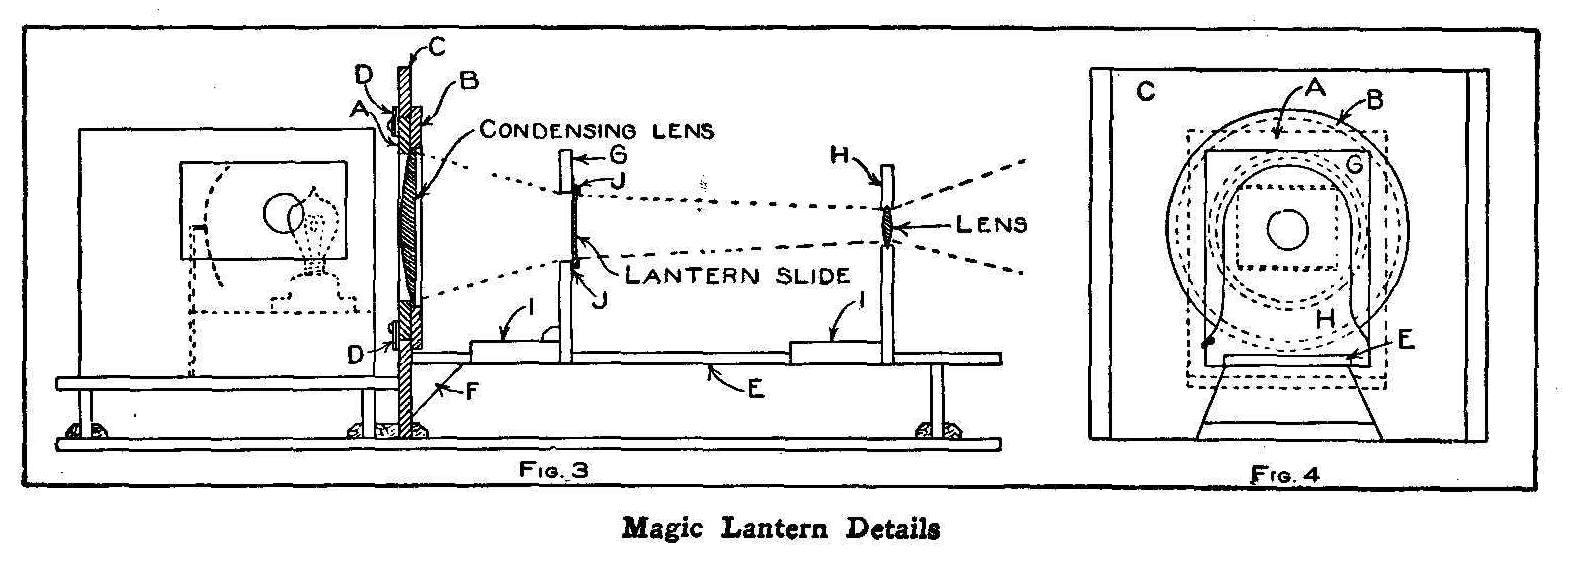 Magic Lantern Details